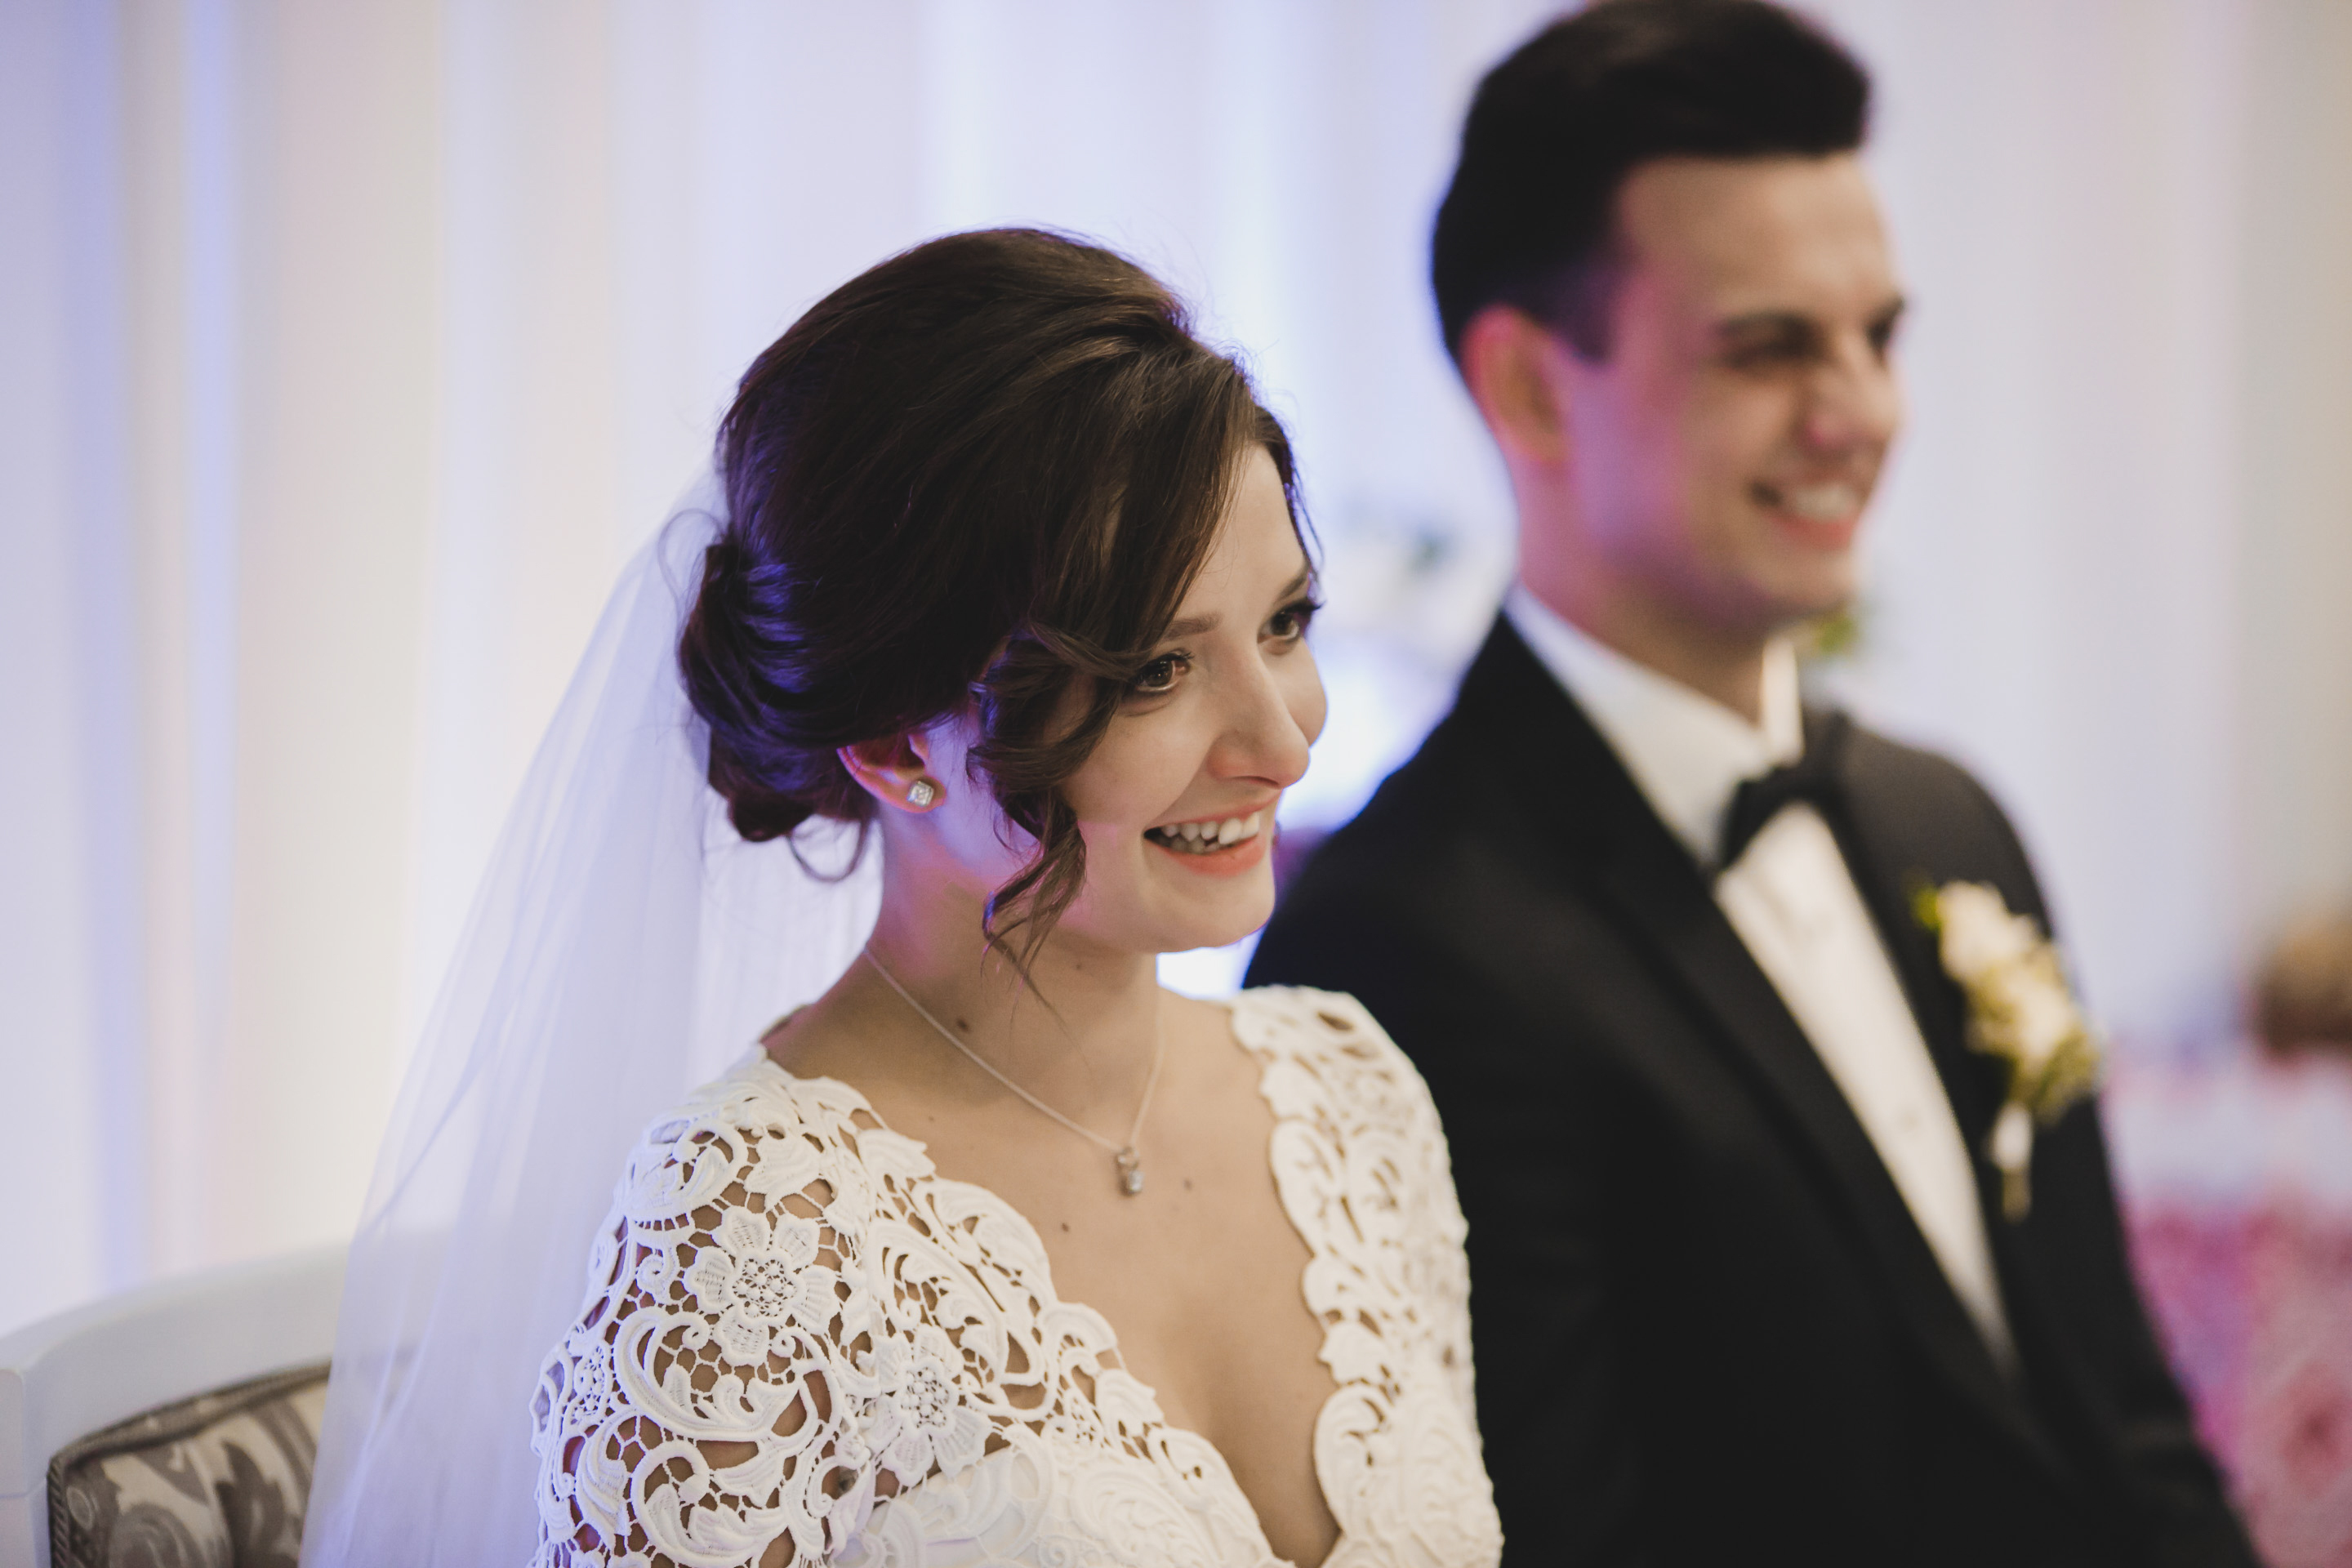 Una pareja en su boda | Fuente: Shutterstock